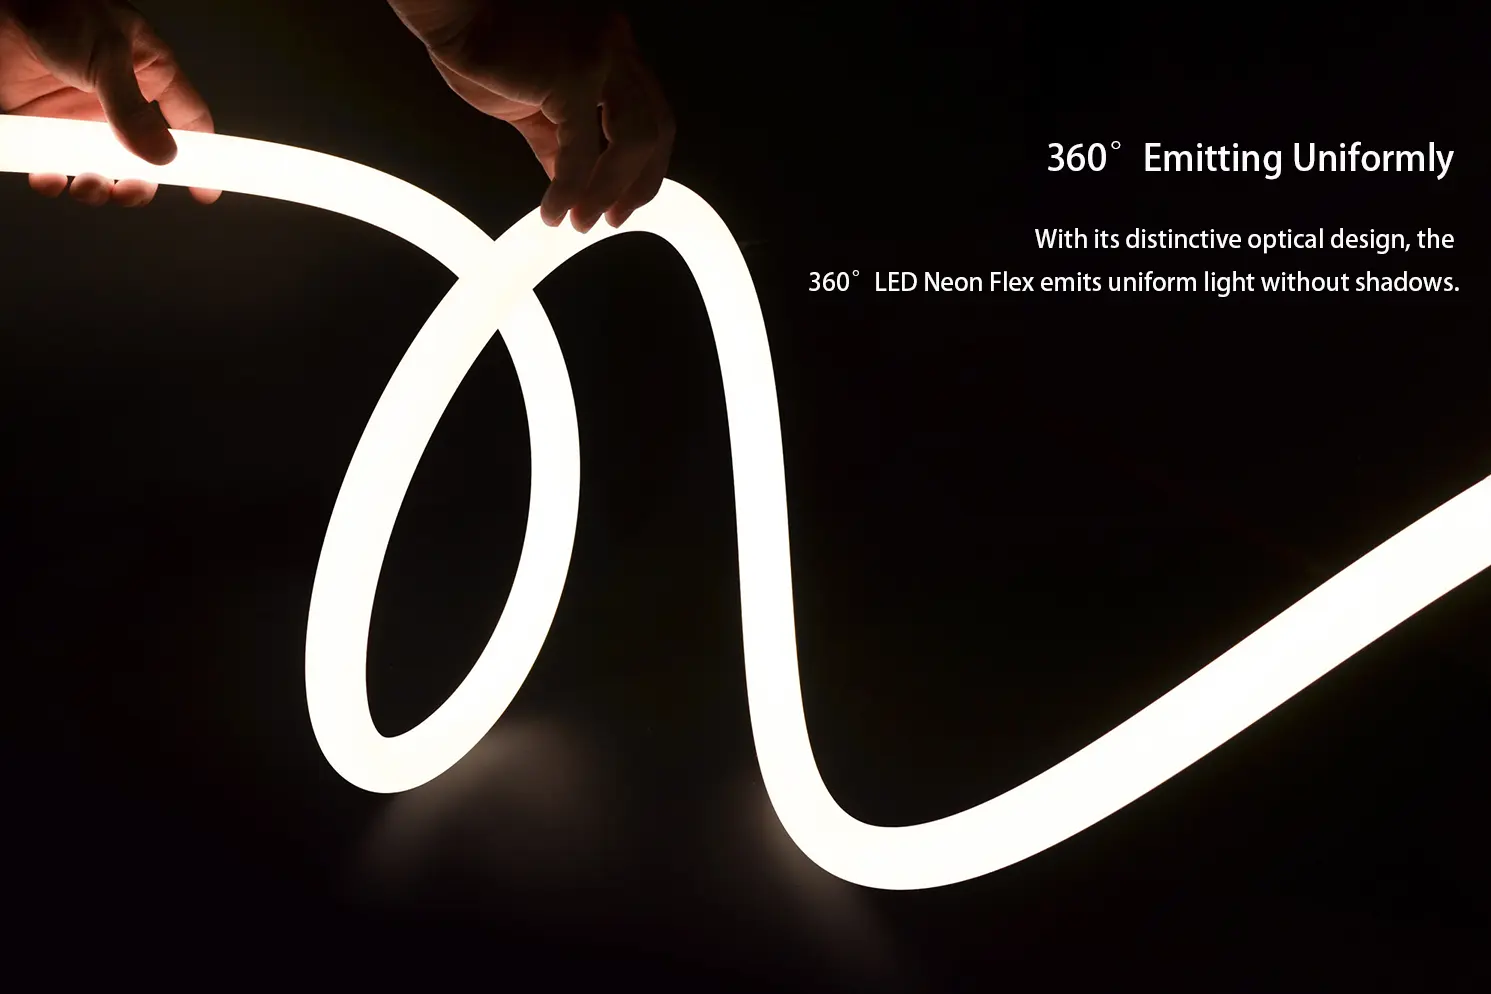 360° LED Neon Flex emitting uniformly